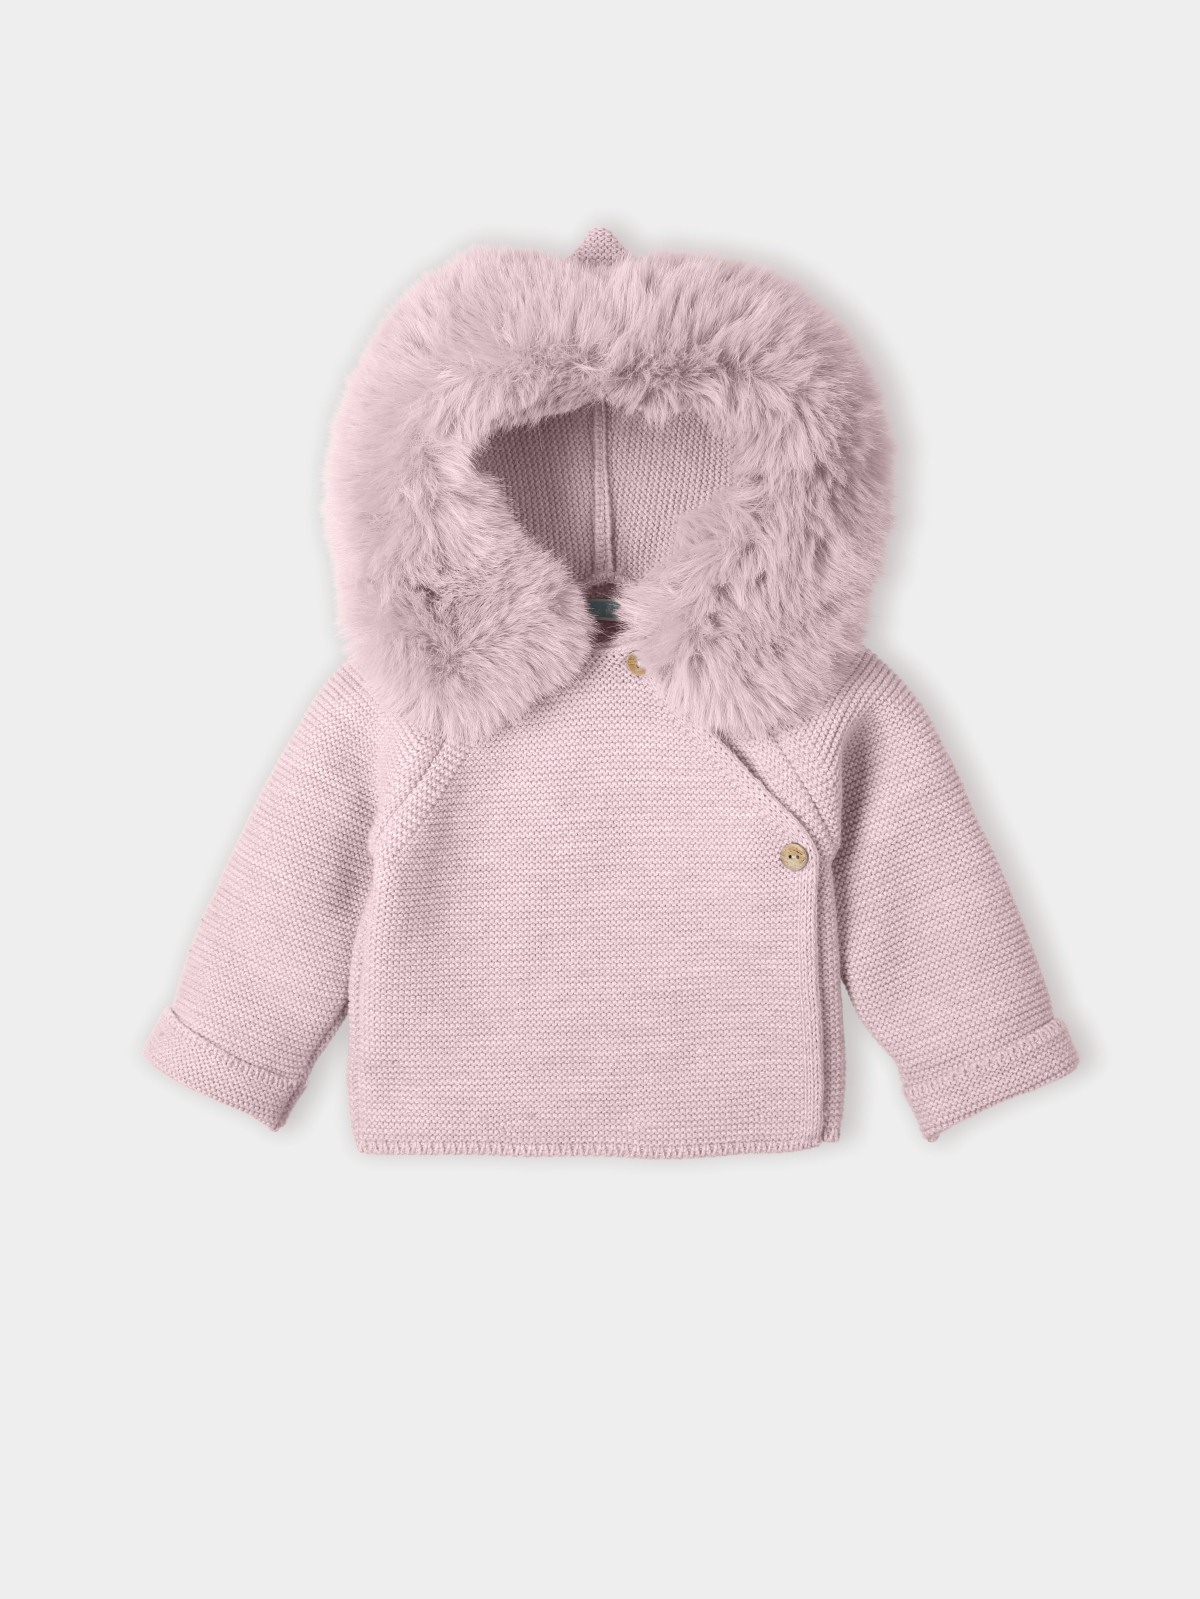 Pink baby coat